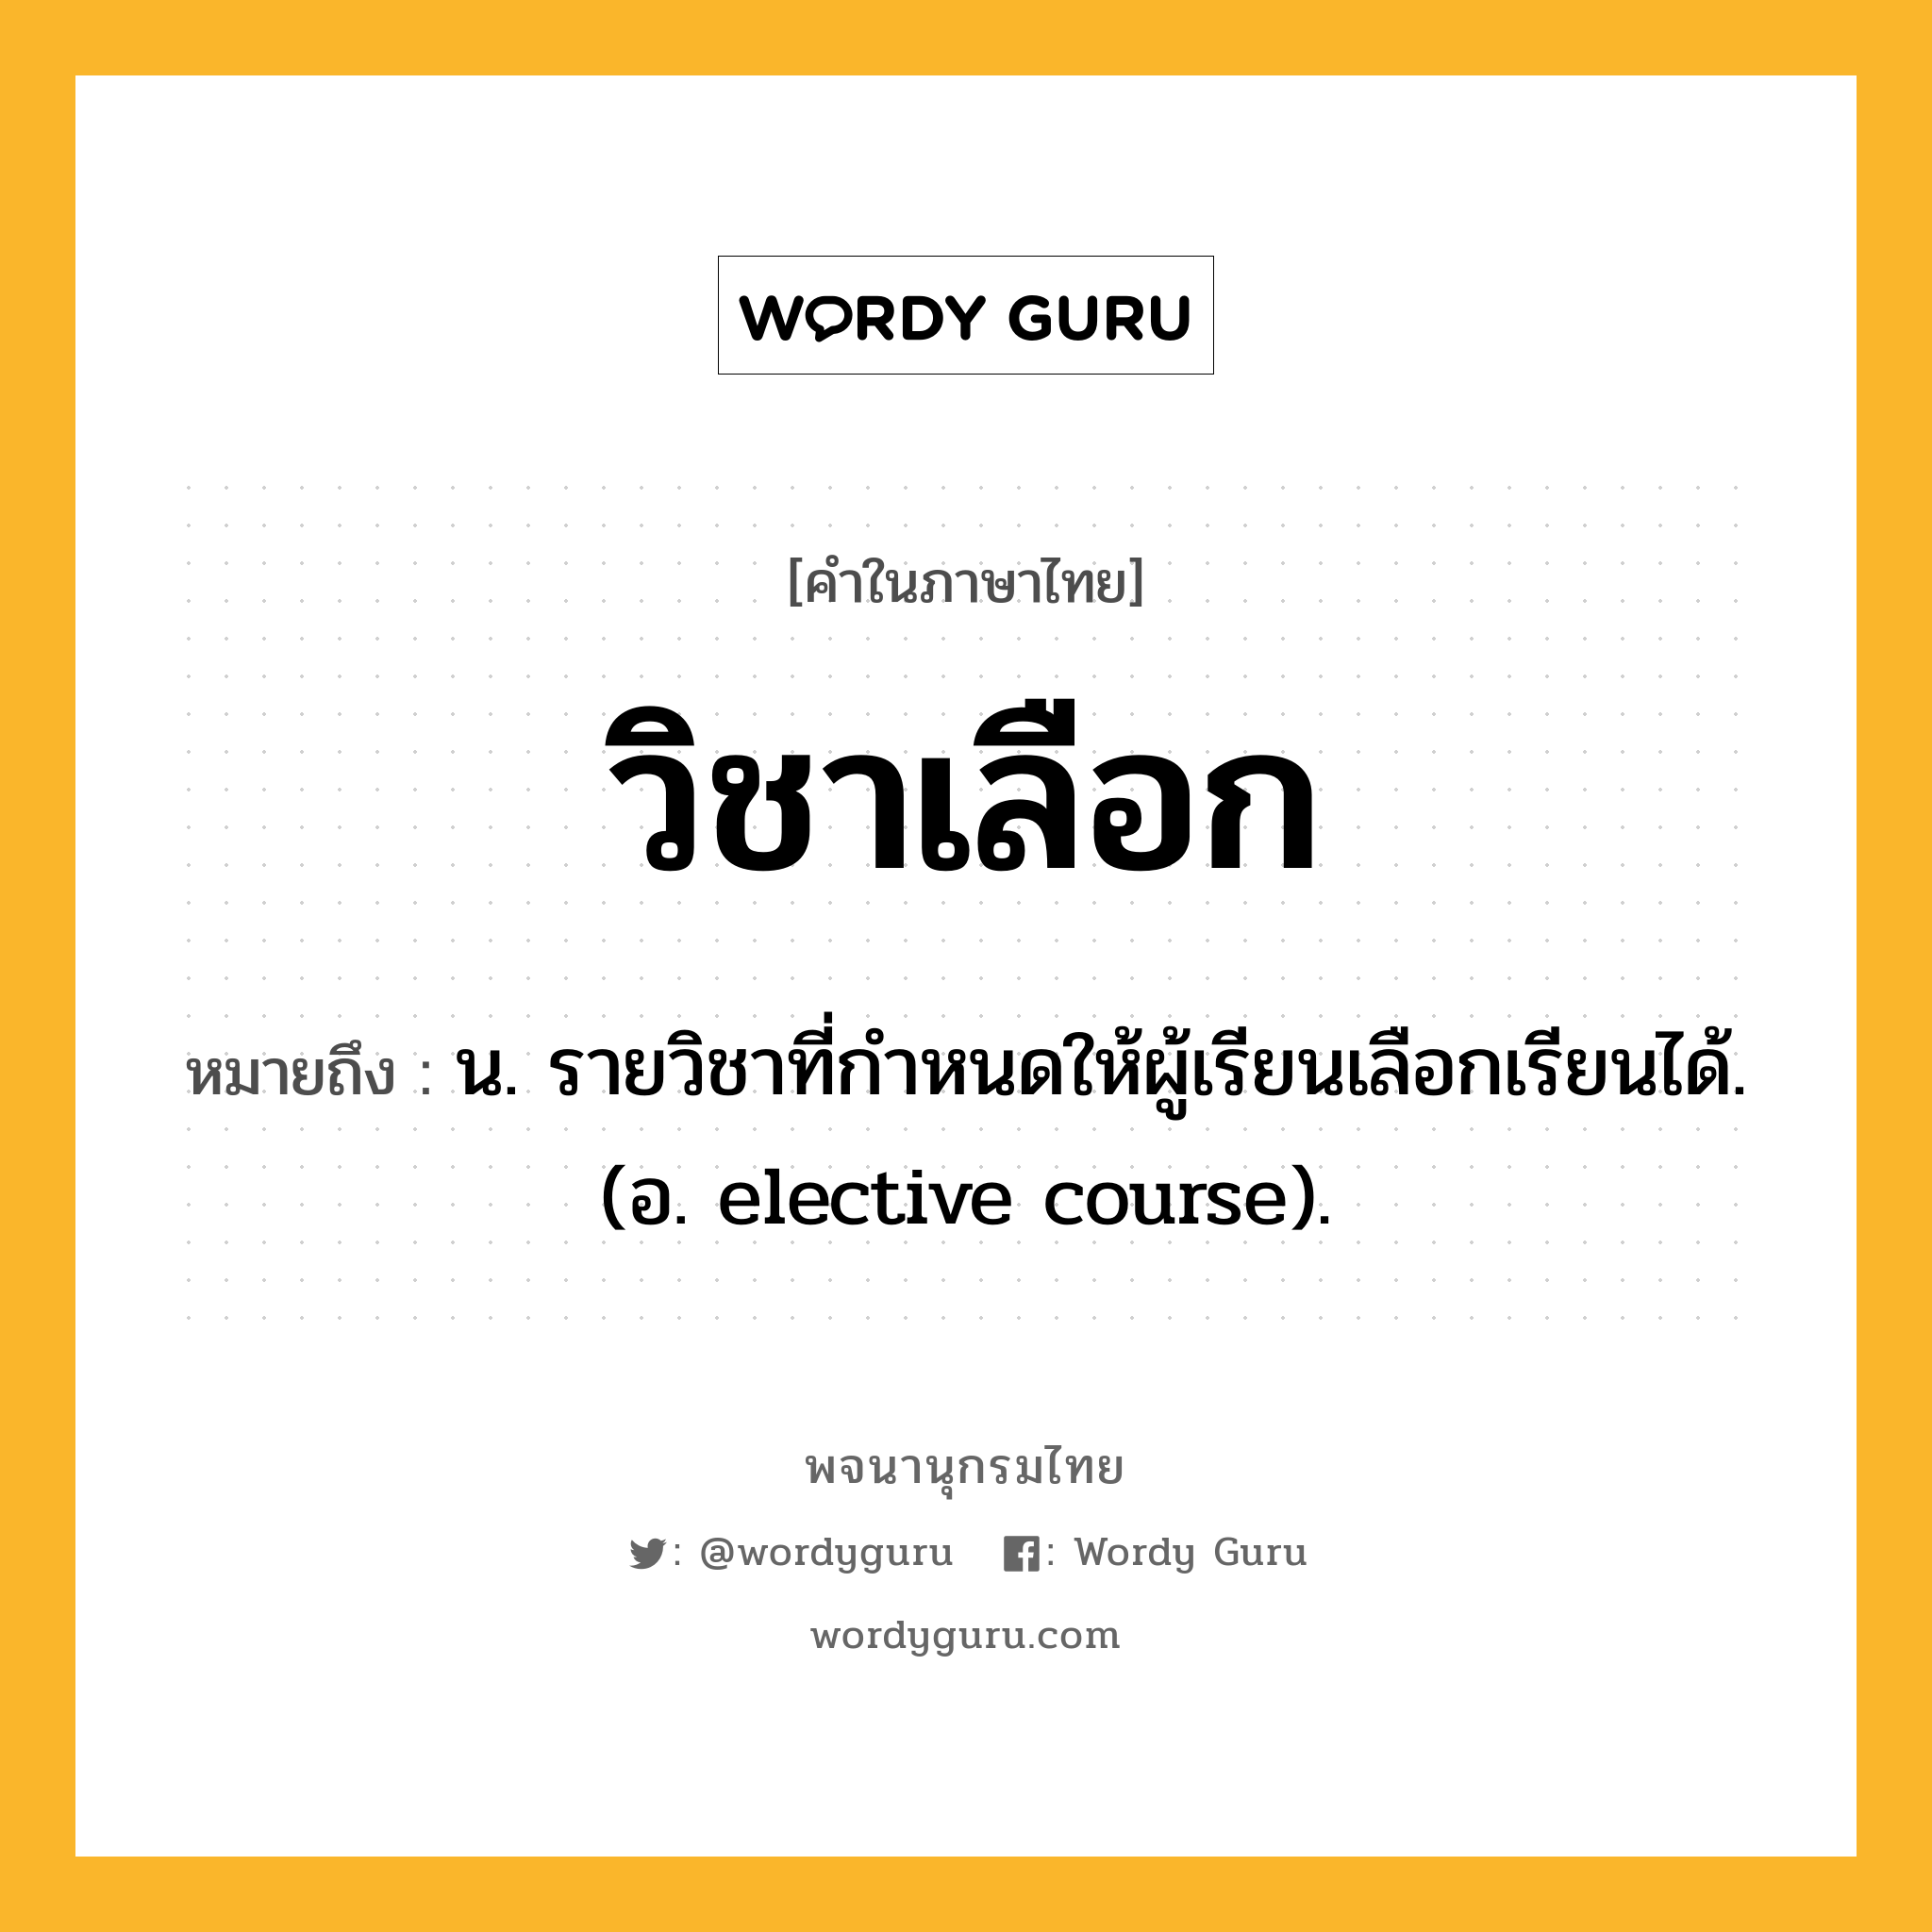 วิชาเลือก ความหมาย หมายถึงอะไร?, คำในภาษาไทย วิชาเลือก หมายถึง น. รายวิชาที่กำหนดให้ผู้เรียนเลือกเรียนได้. (อ. elective course).